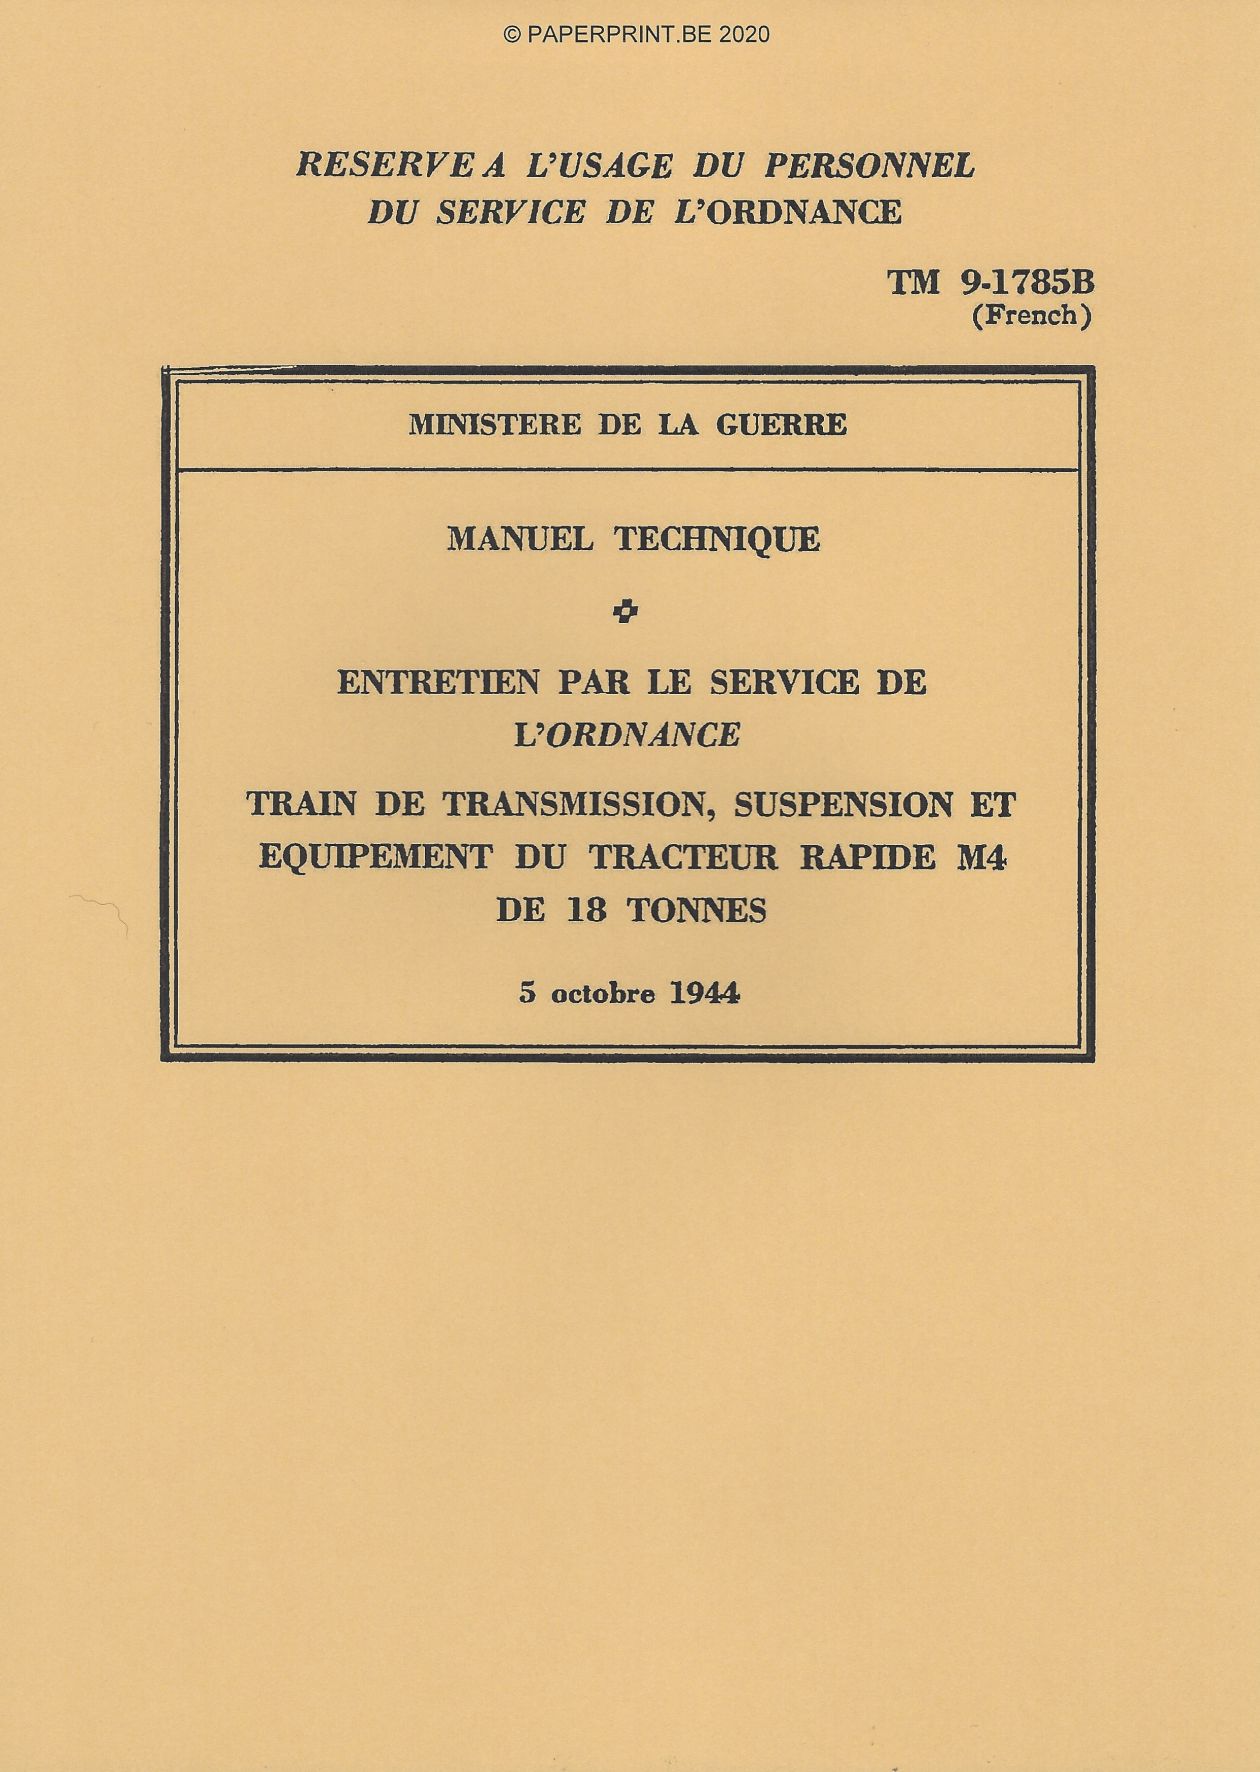 TM 9-1785B FR TRAIN DE TRANSMISSION, SUSPENSION ET EQUIPEMENT DU TRACTEUR RAPIDE M4 DE 18 TONNES